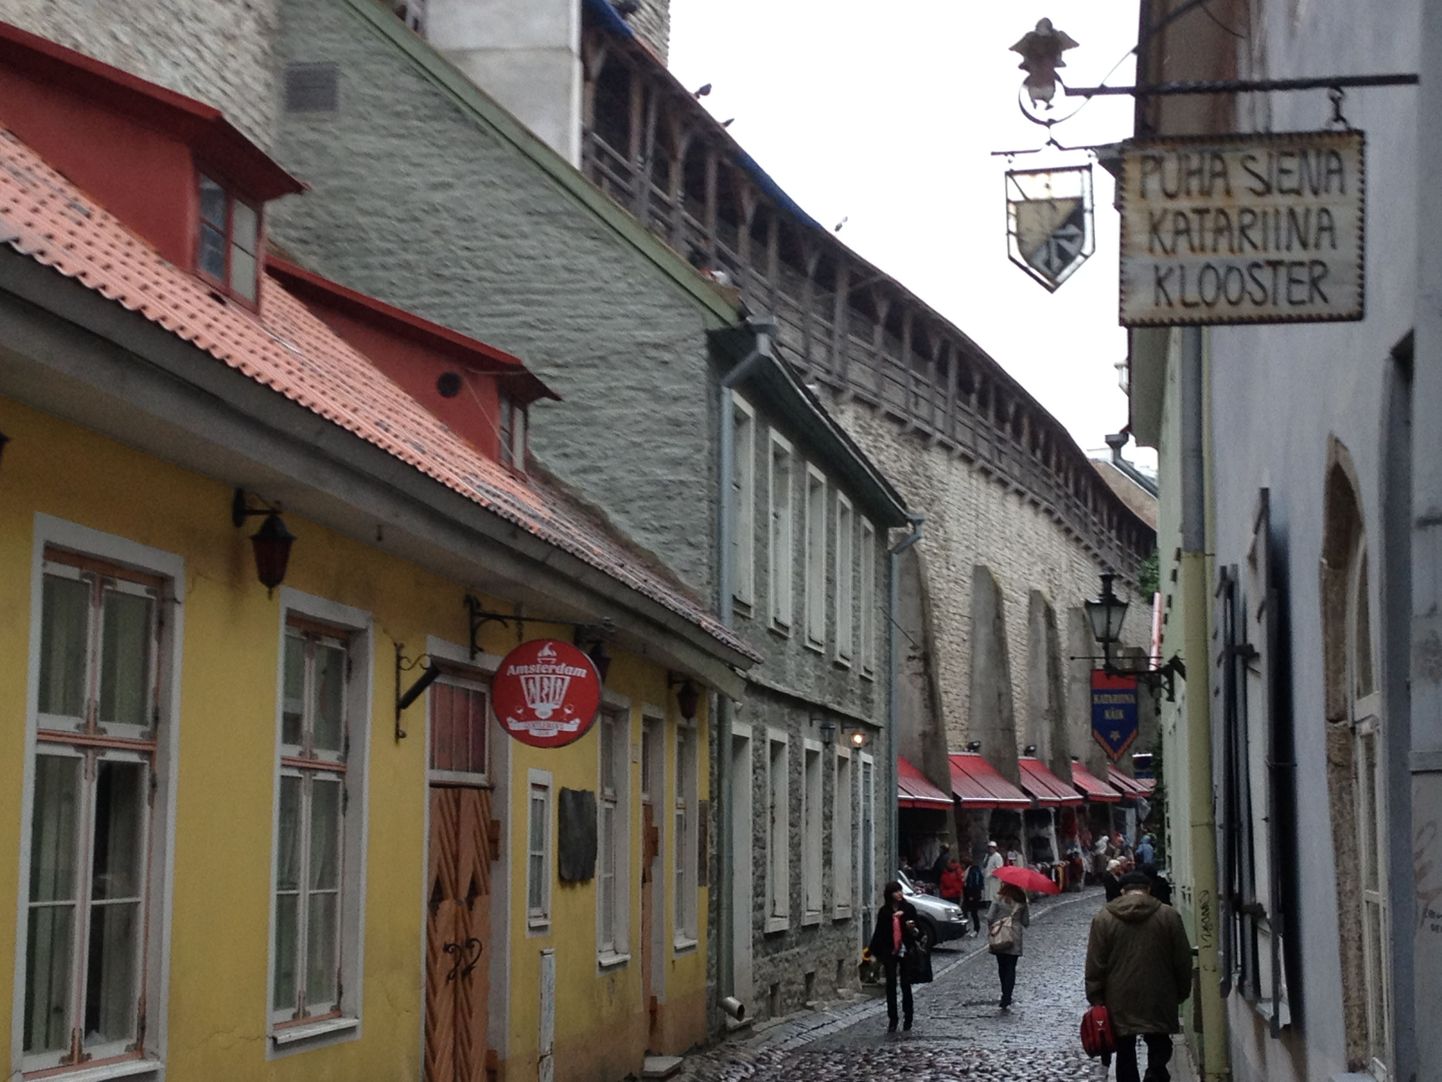 Paljud turistid viivad Tallinnast kaasa foto, kus ühel pool teed on klooster, teisel pool aga punaste laternatega asutus.